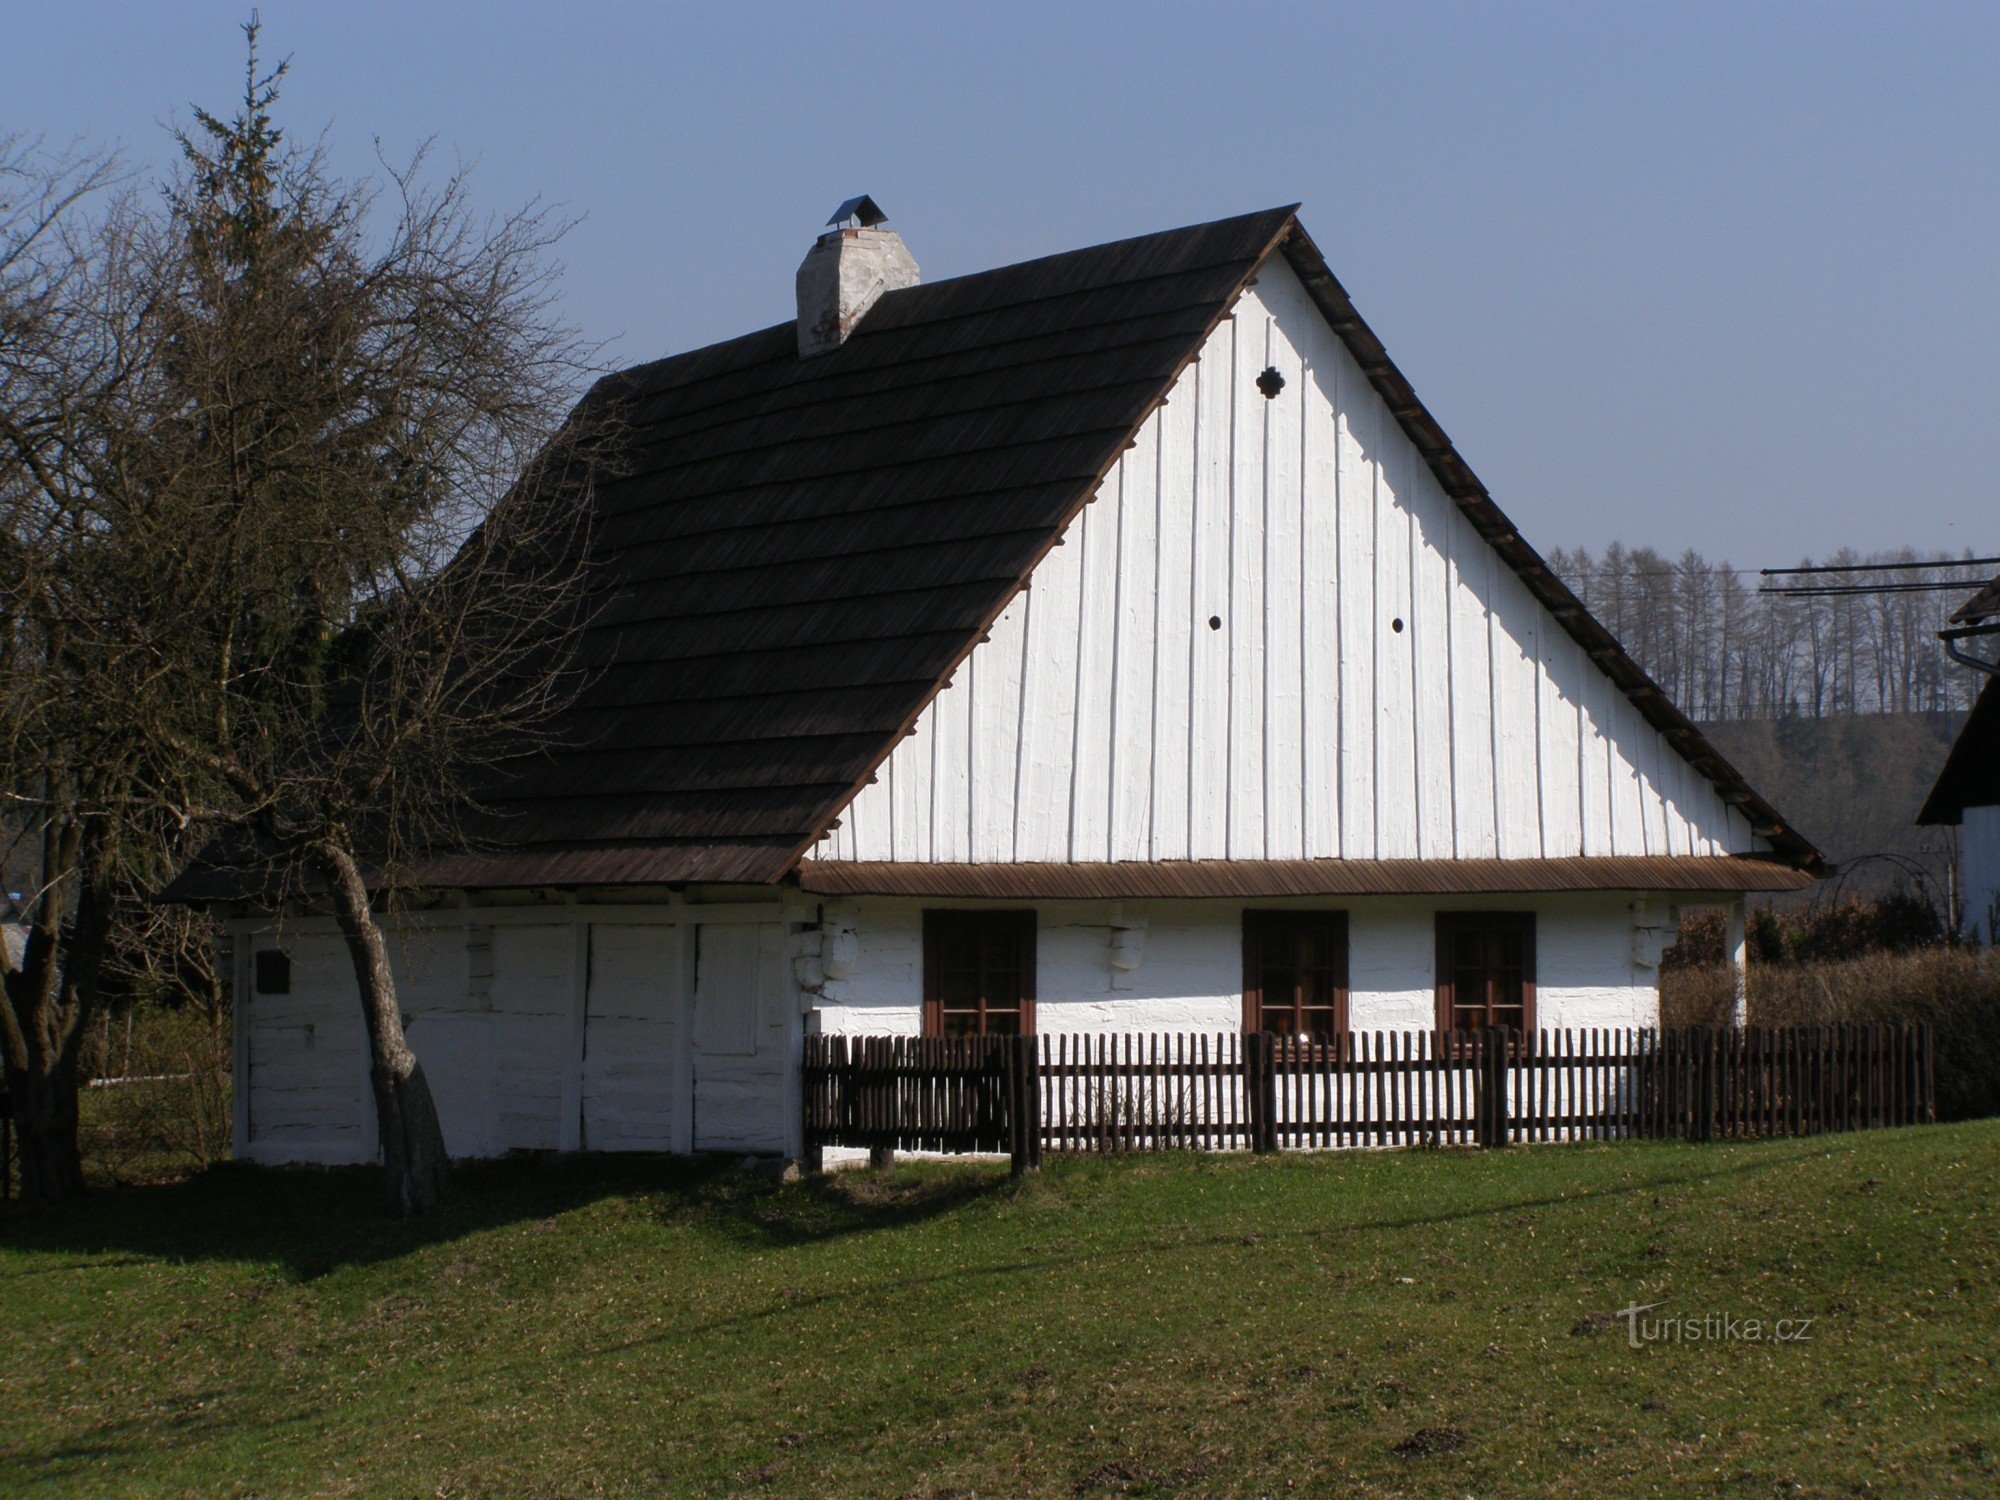 Žamberk (Helvíkovice) - rojstni kraj Prokopa Diviša